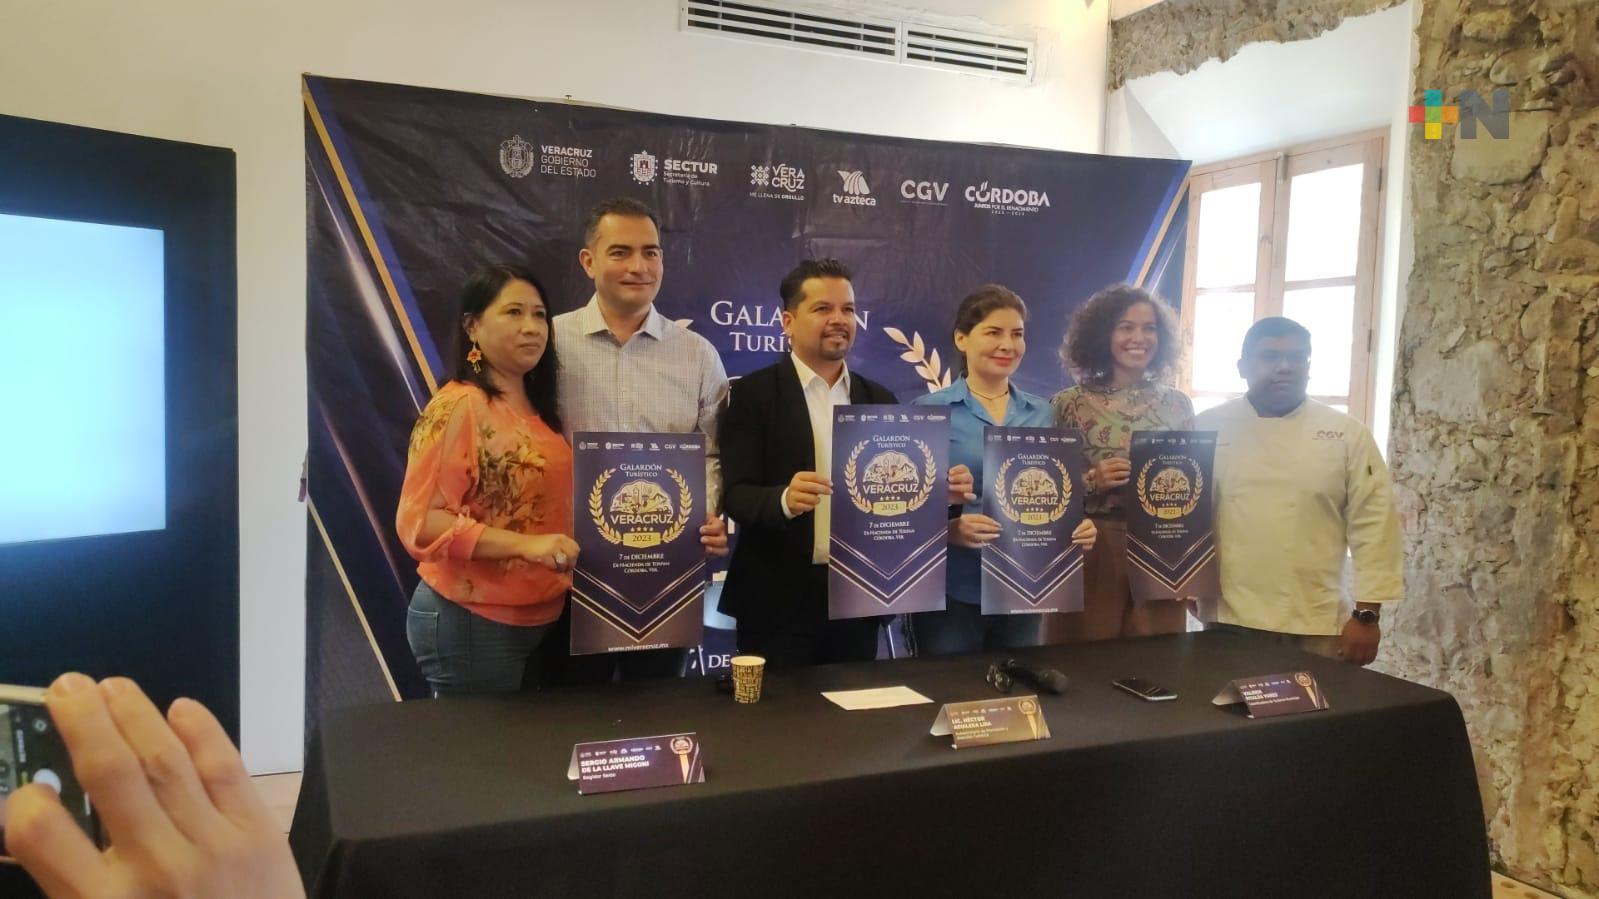 Abierta la convocatoria para participar en certamen «Galardón turístico Veracruz»